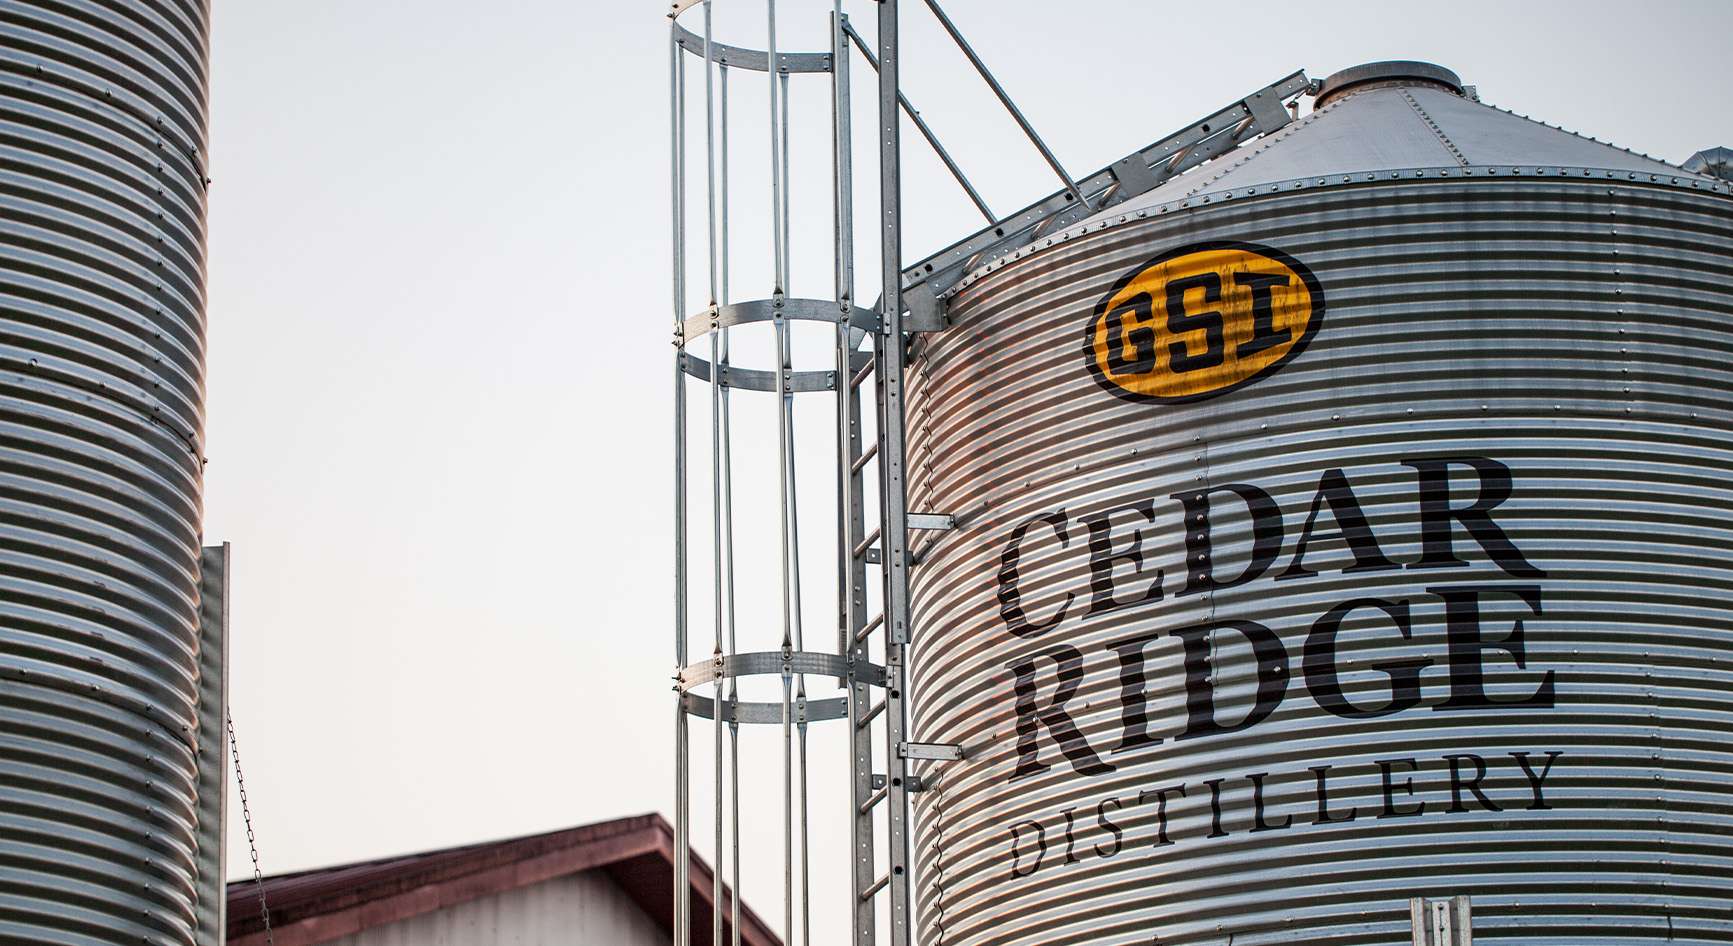 Cedar Ridge branded grain bin